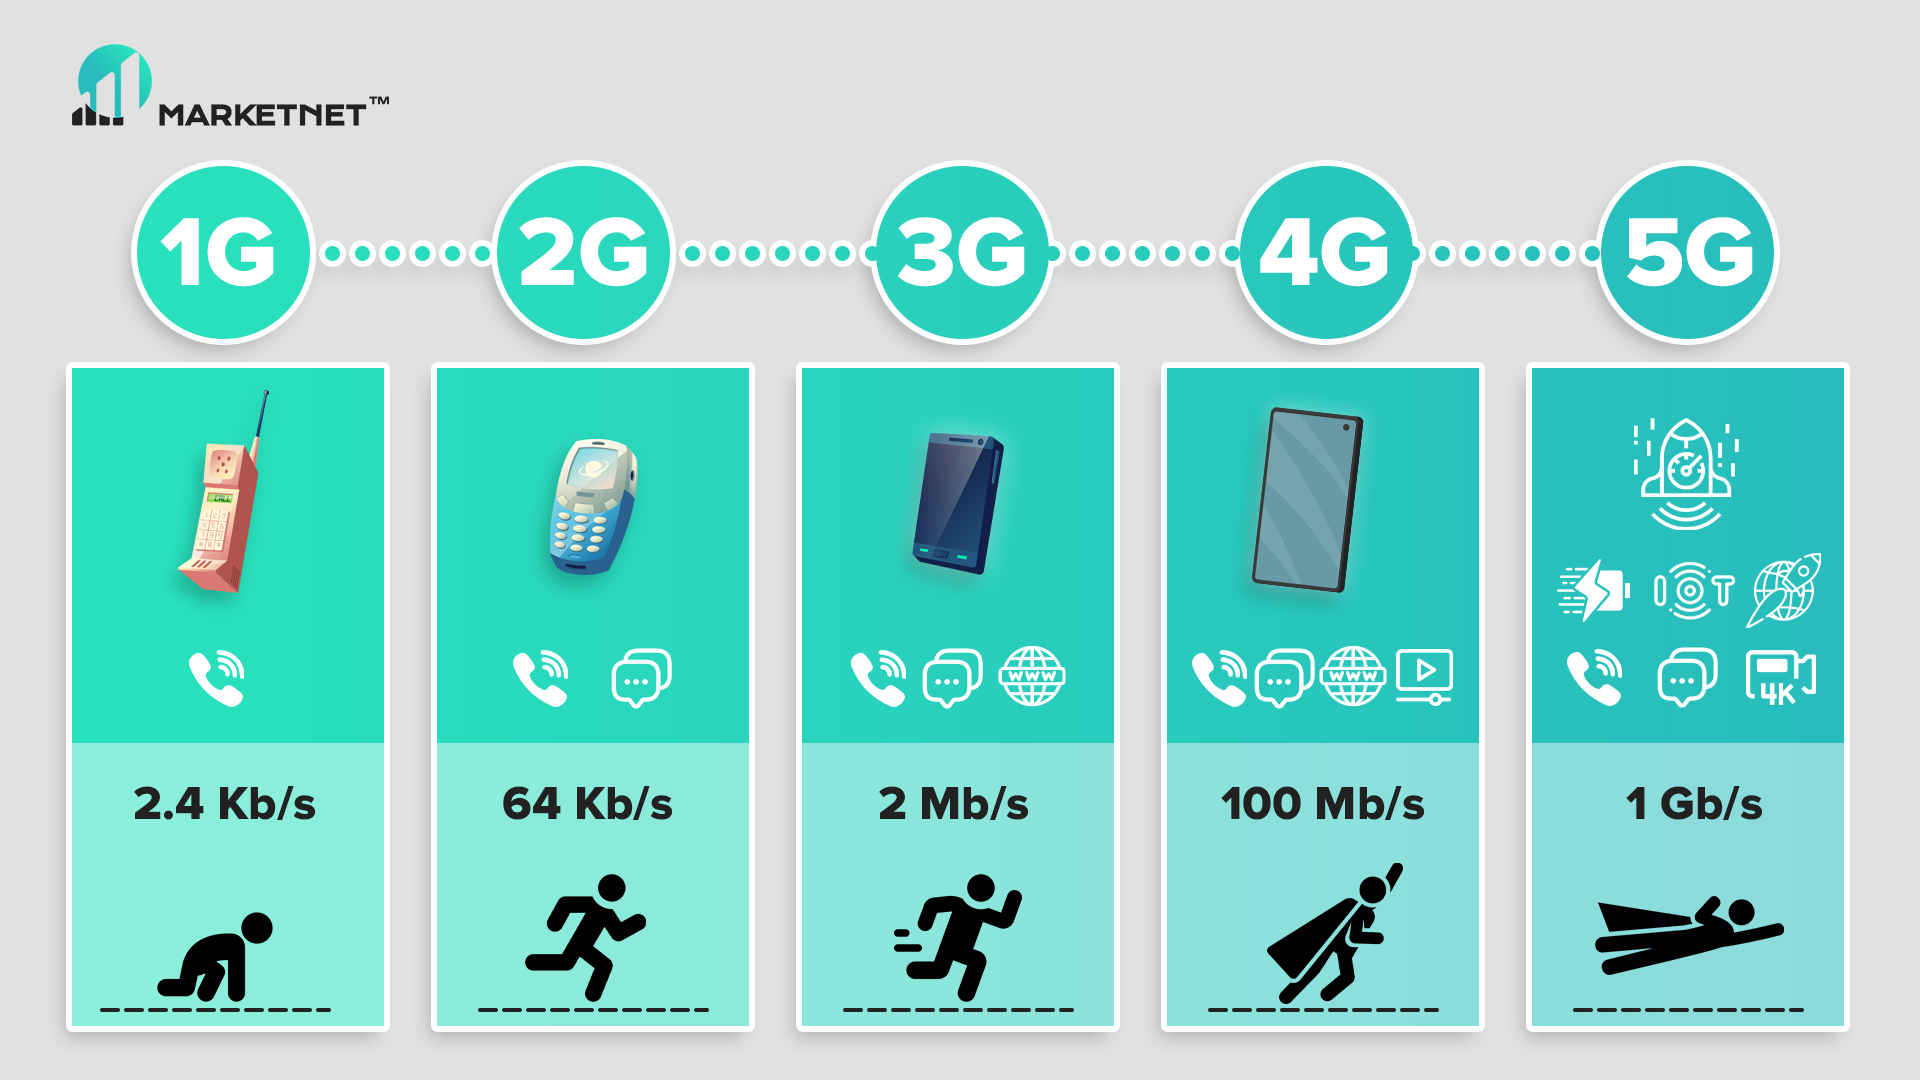 Путь развития сотовой связи, скорости передачи данных, поколения мобильных сетей: 1G, 2G, 3G, 4G и 5G на Marketnet. От GSM, CSD (wap), CDMA до 4G LTE Advanced Pro